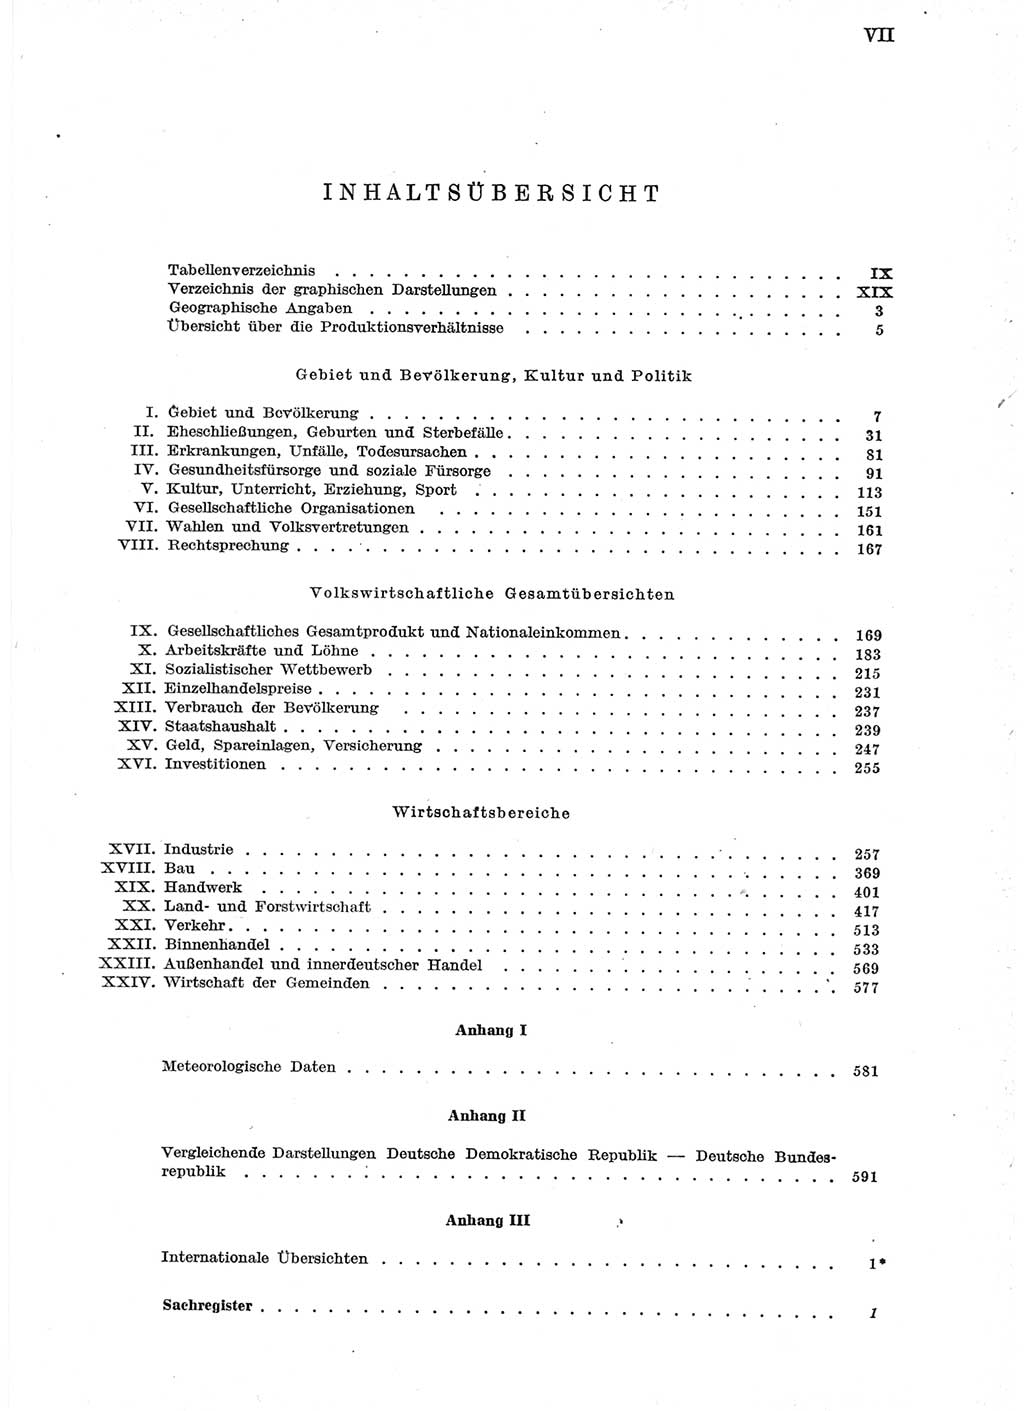 Statistisches Jahrbuch der Deutschen Demokratischen Republik (DDR) 1958, Seite 7 (Stat. Jb. DDR 1958, S. 7)